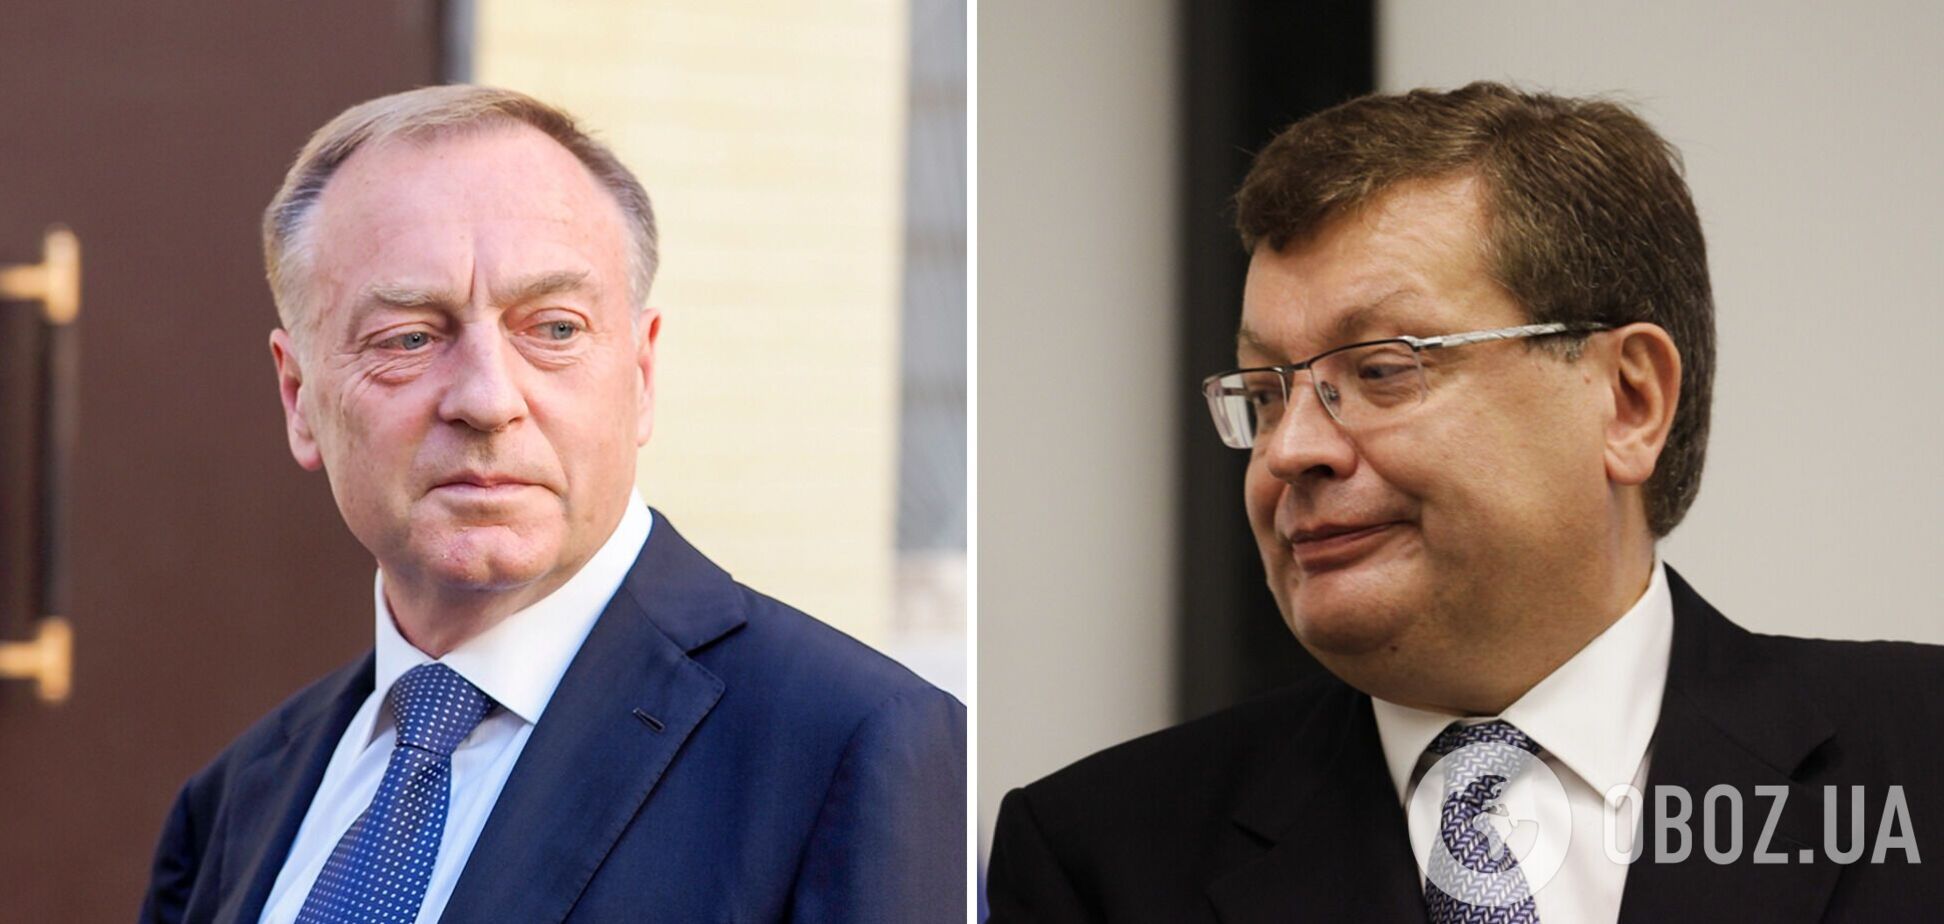 В Україні повідомили про підозру двом ексміністрам, які погодили Харківські угоди на користь РФ, третьому вдалося 'відкосити'